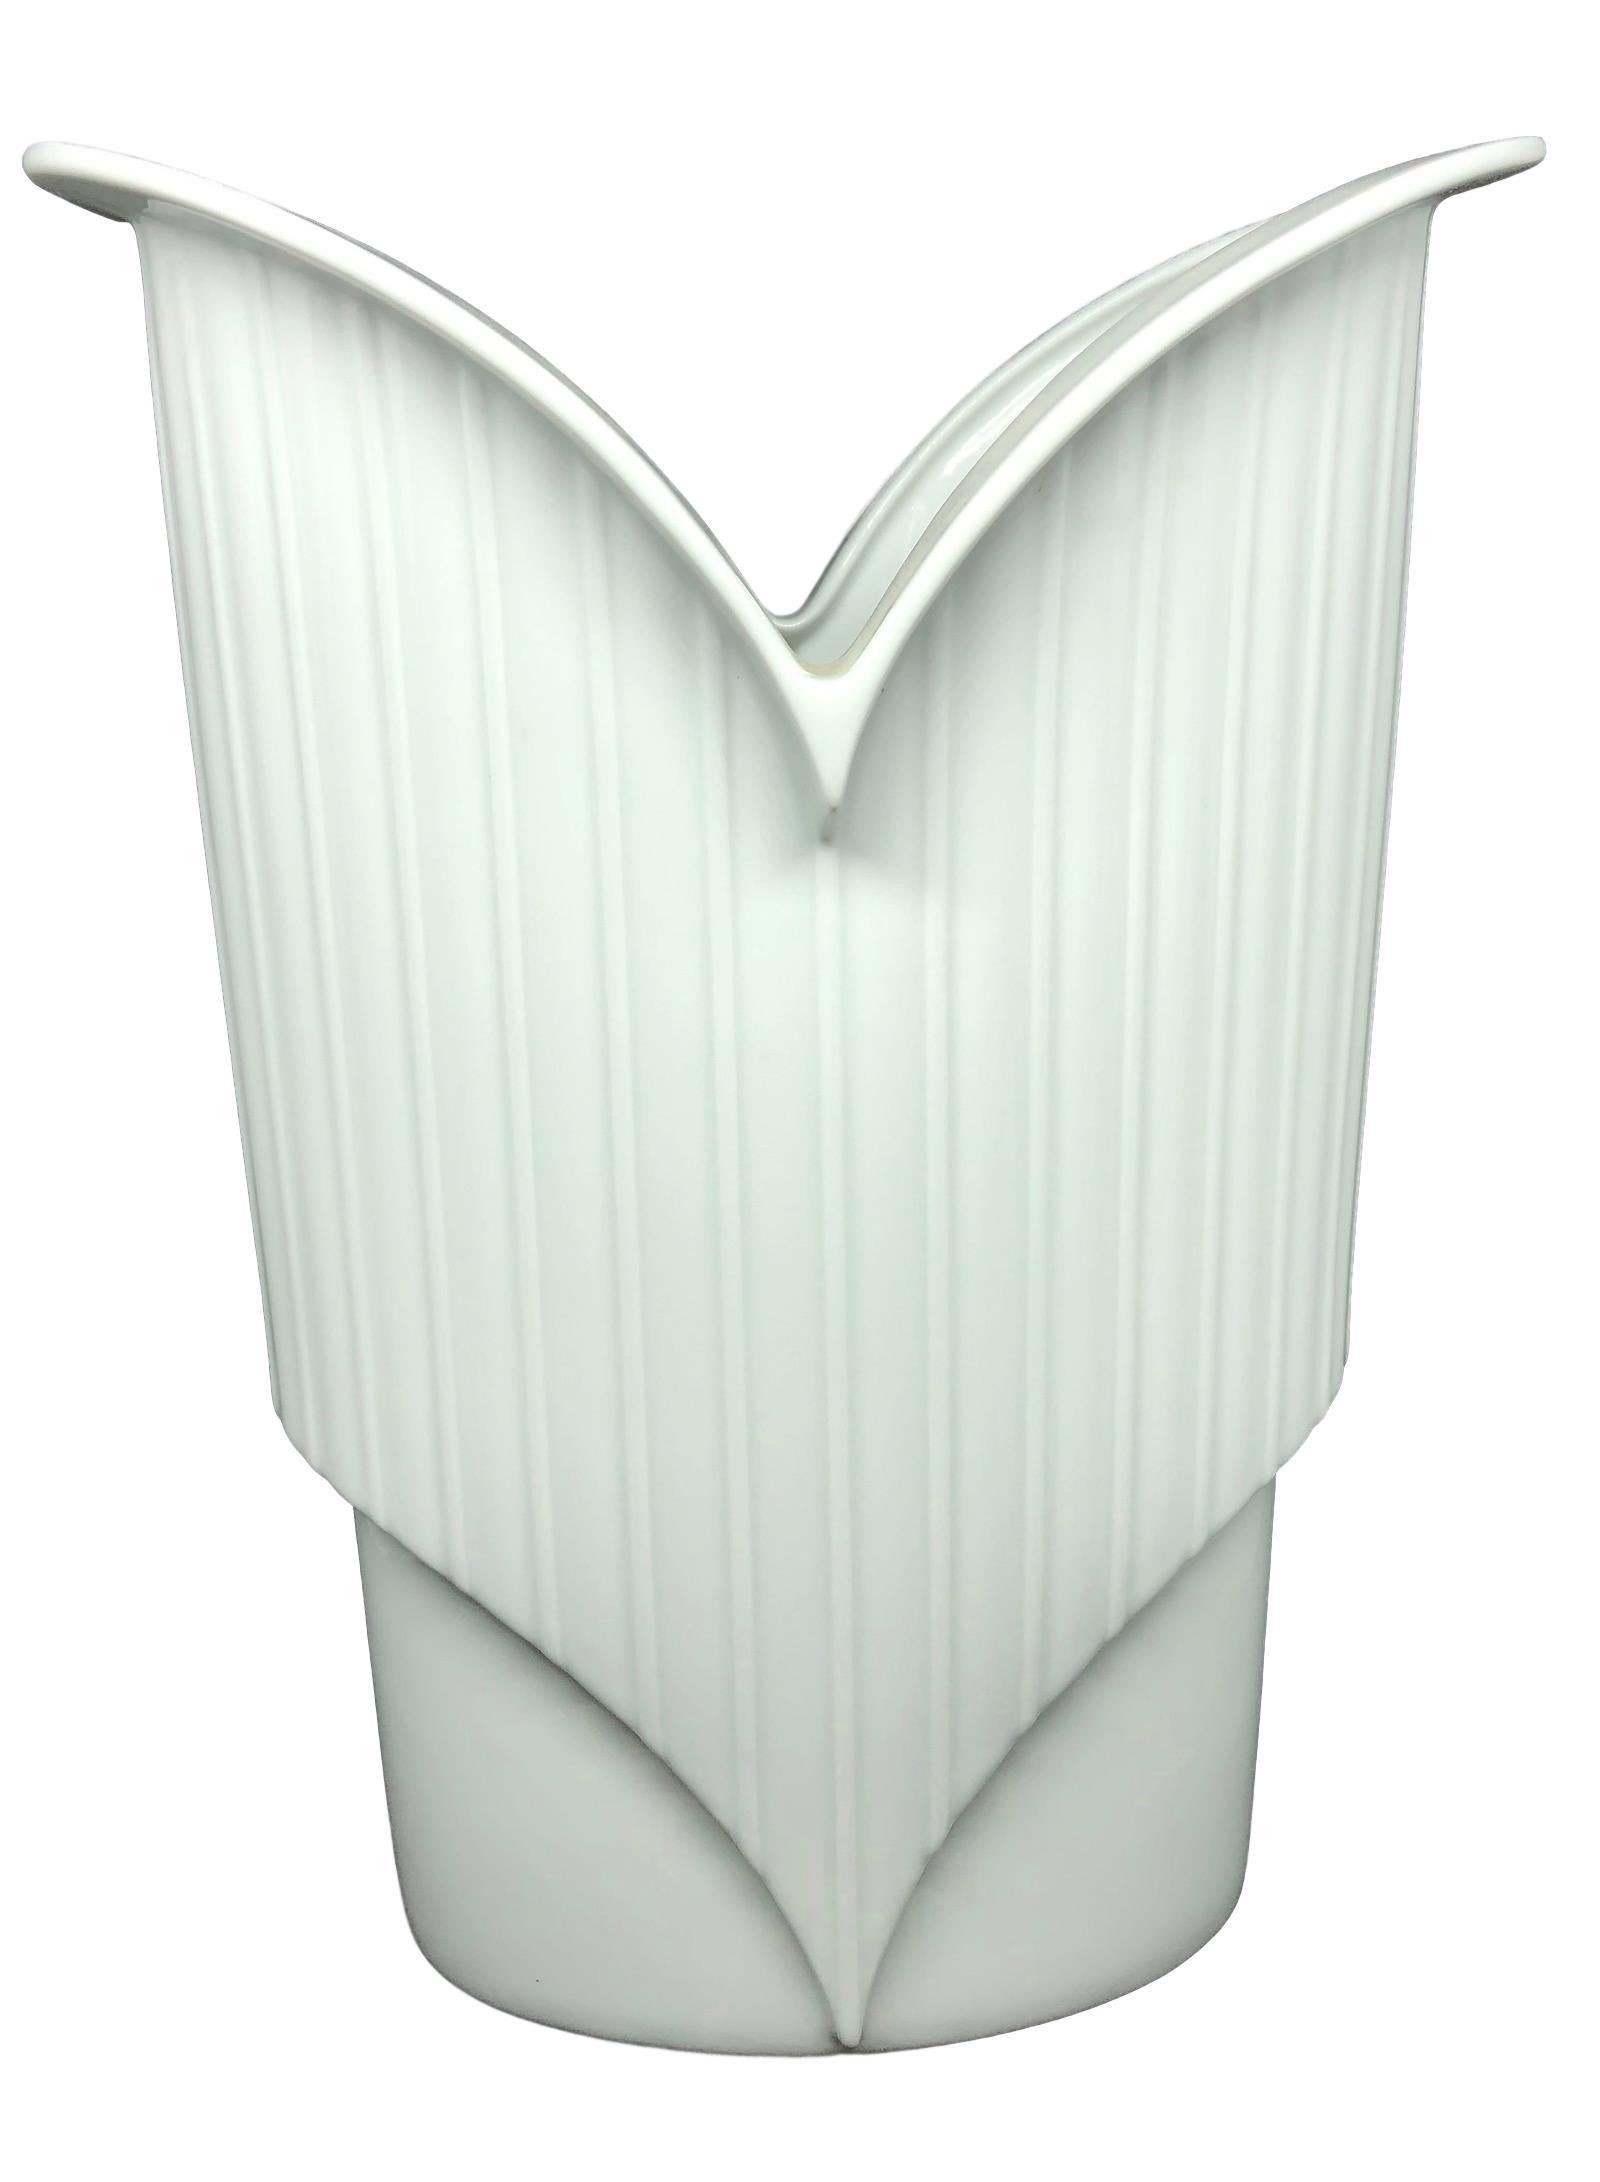 White China Porcelain Vase by Jan van der Vaart for Rosenthal In Good Condition For Sale In Nuernberg, DE